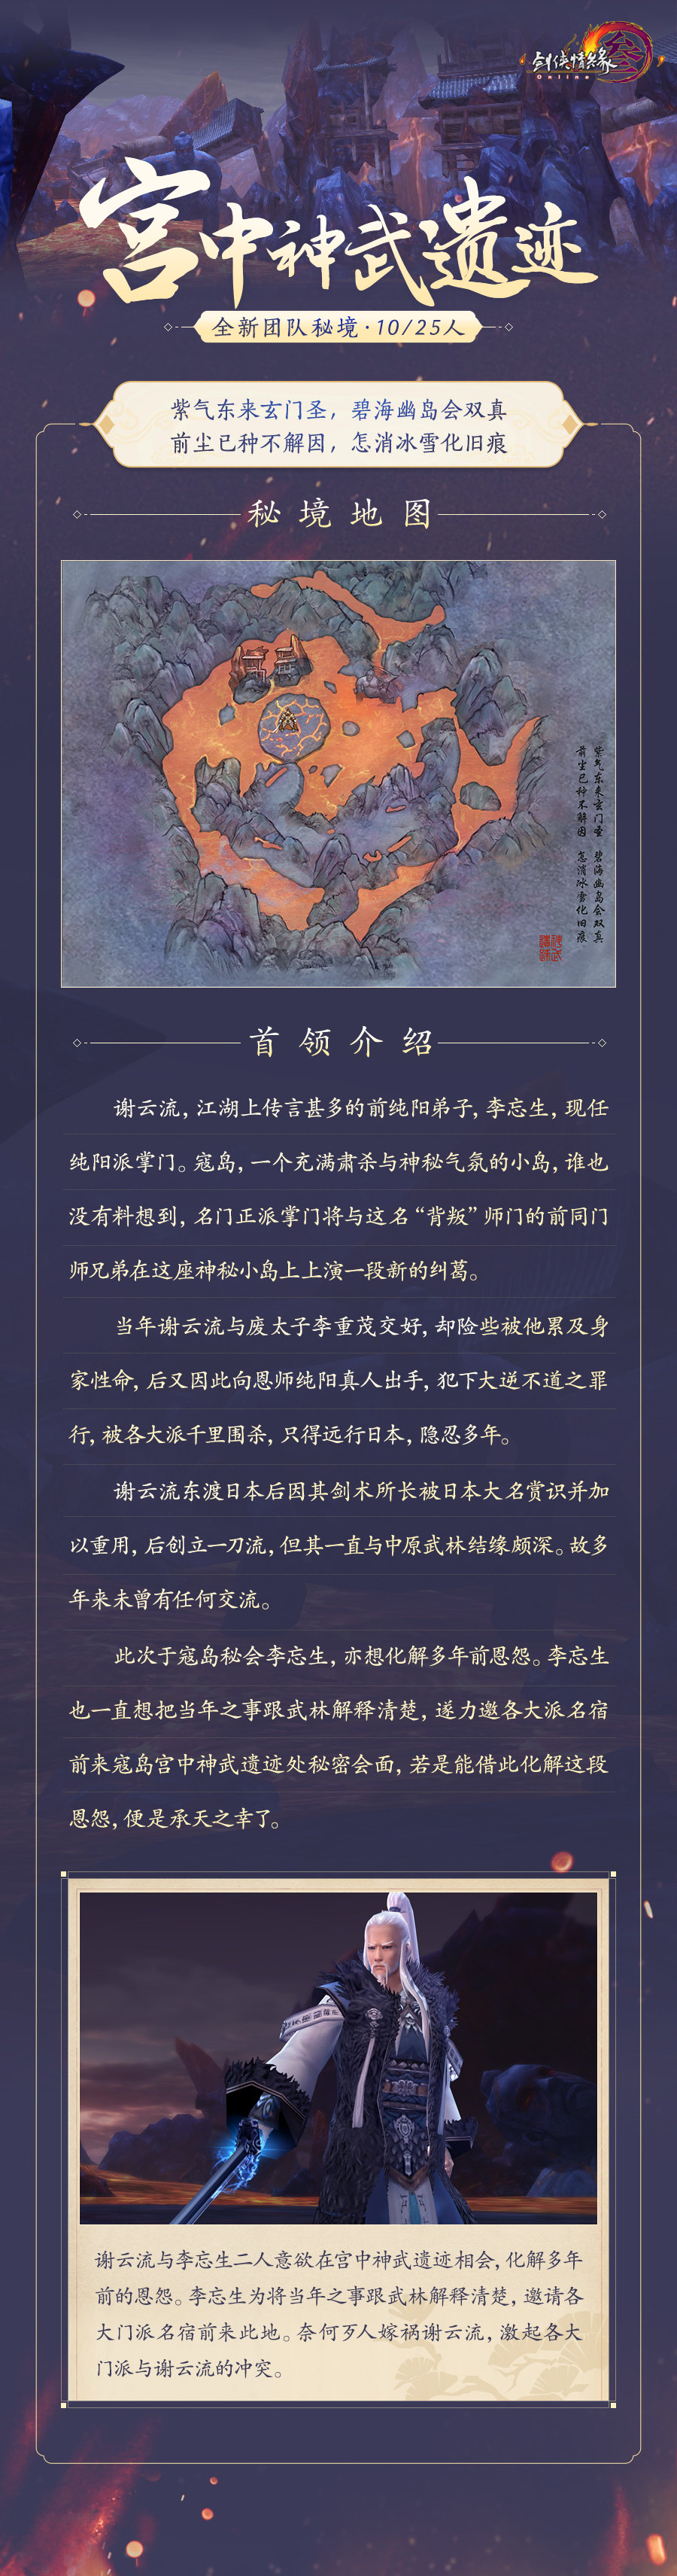 《剑网3》怀旧服单首领团队秘境下周开放  大唐江湖再起狂澜